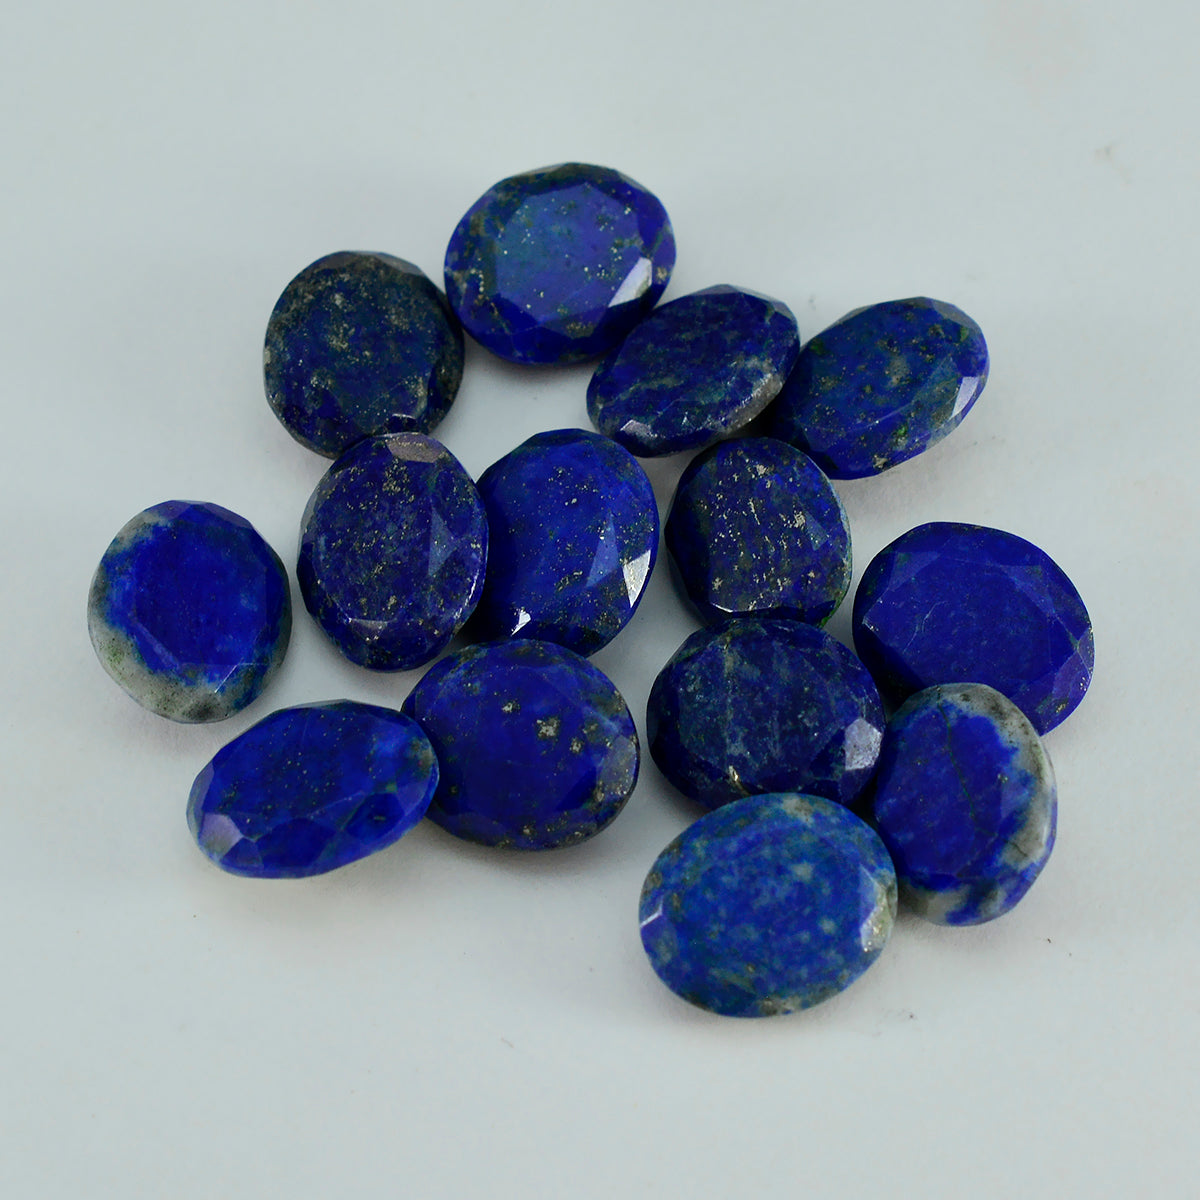 riyogems 1 шт. натуральный синий лазурит ограненный 10x14 мм овальной формы прекрасное качество свободный драгоценный камень